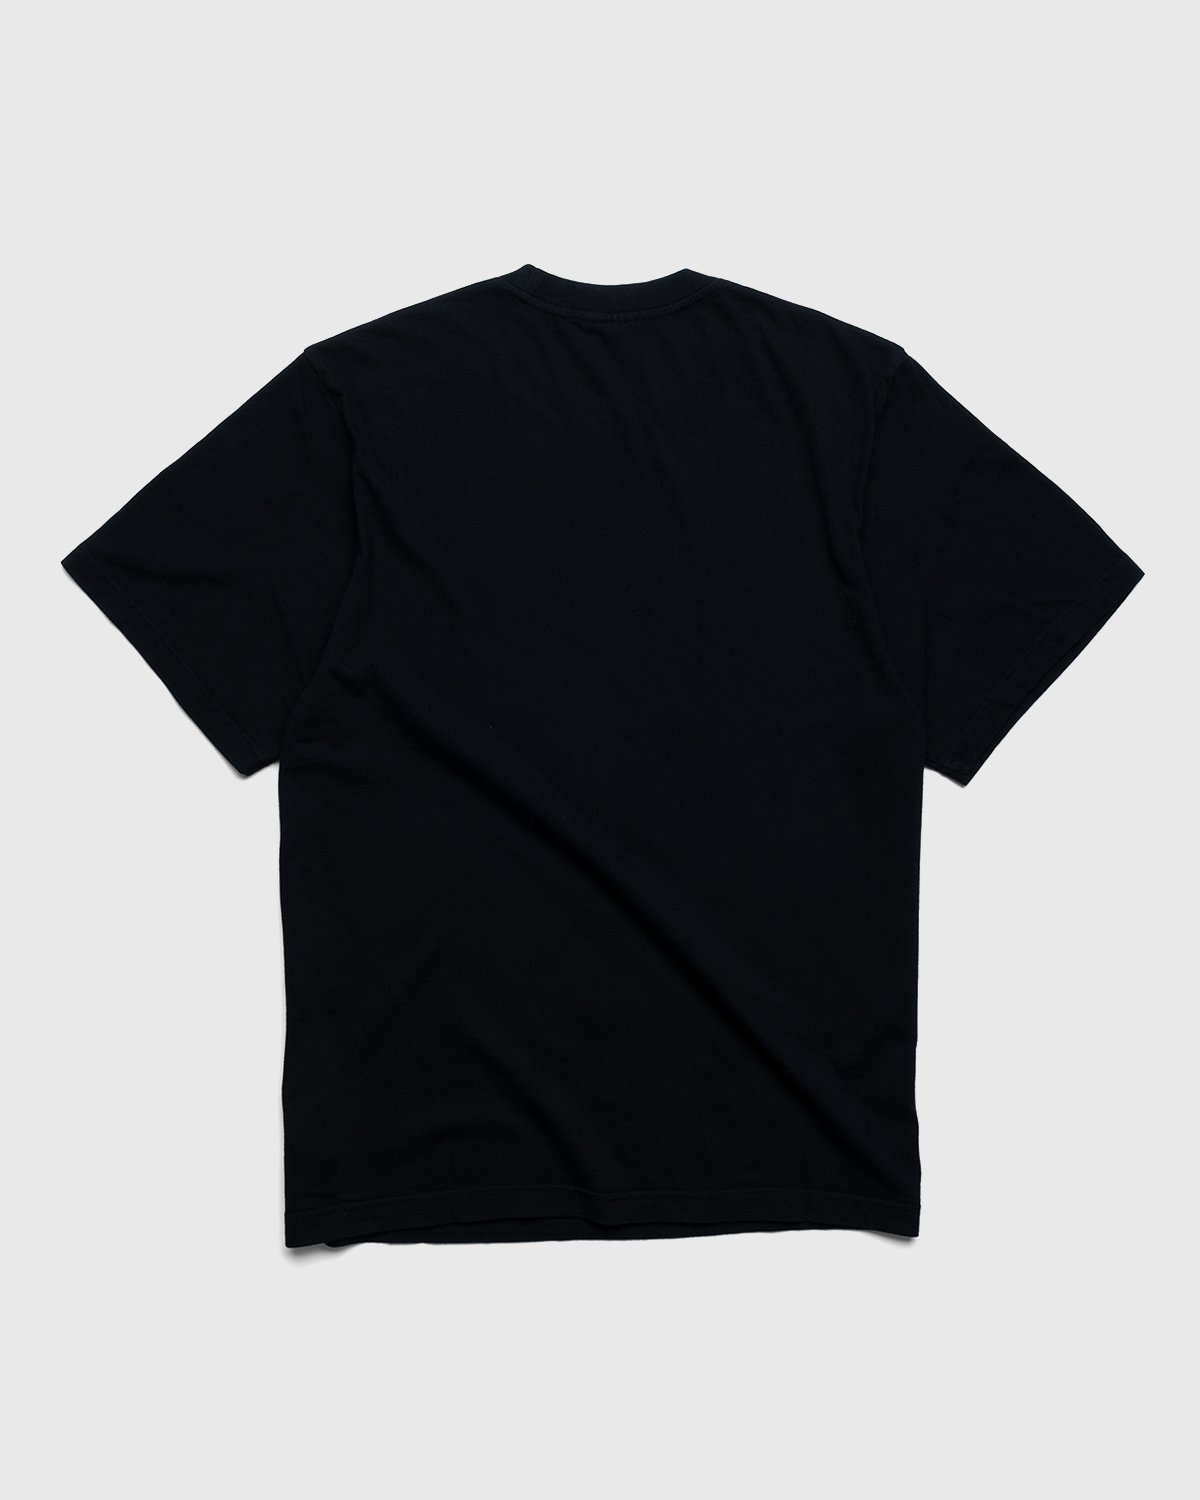 Noon Goons – Sister City T-Shirt Black - T-Shirts - Black - Image 2